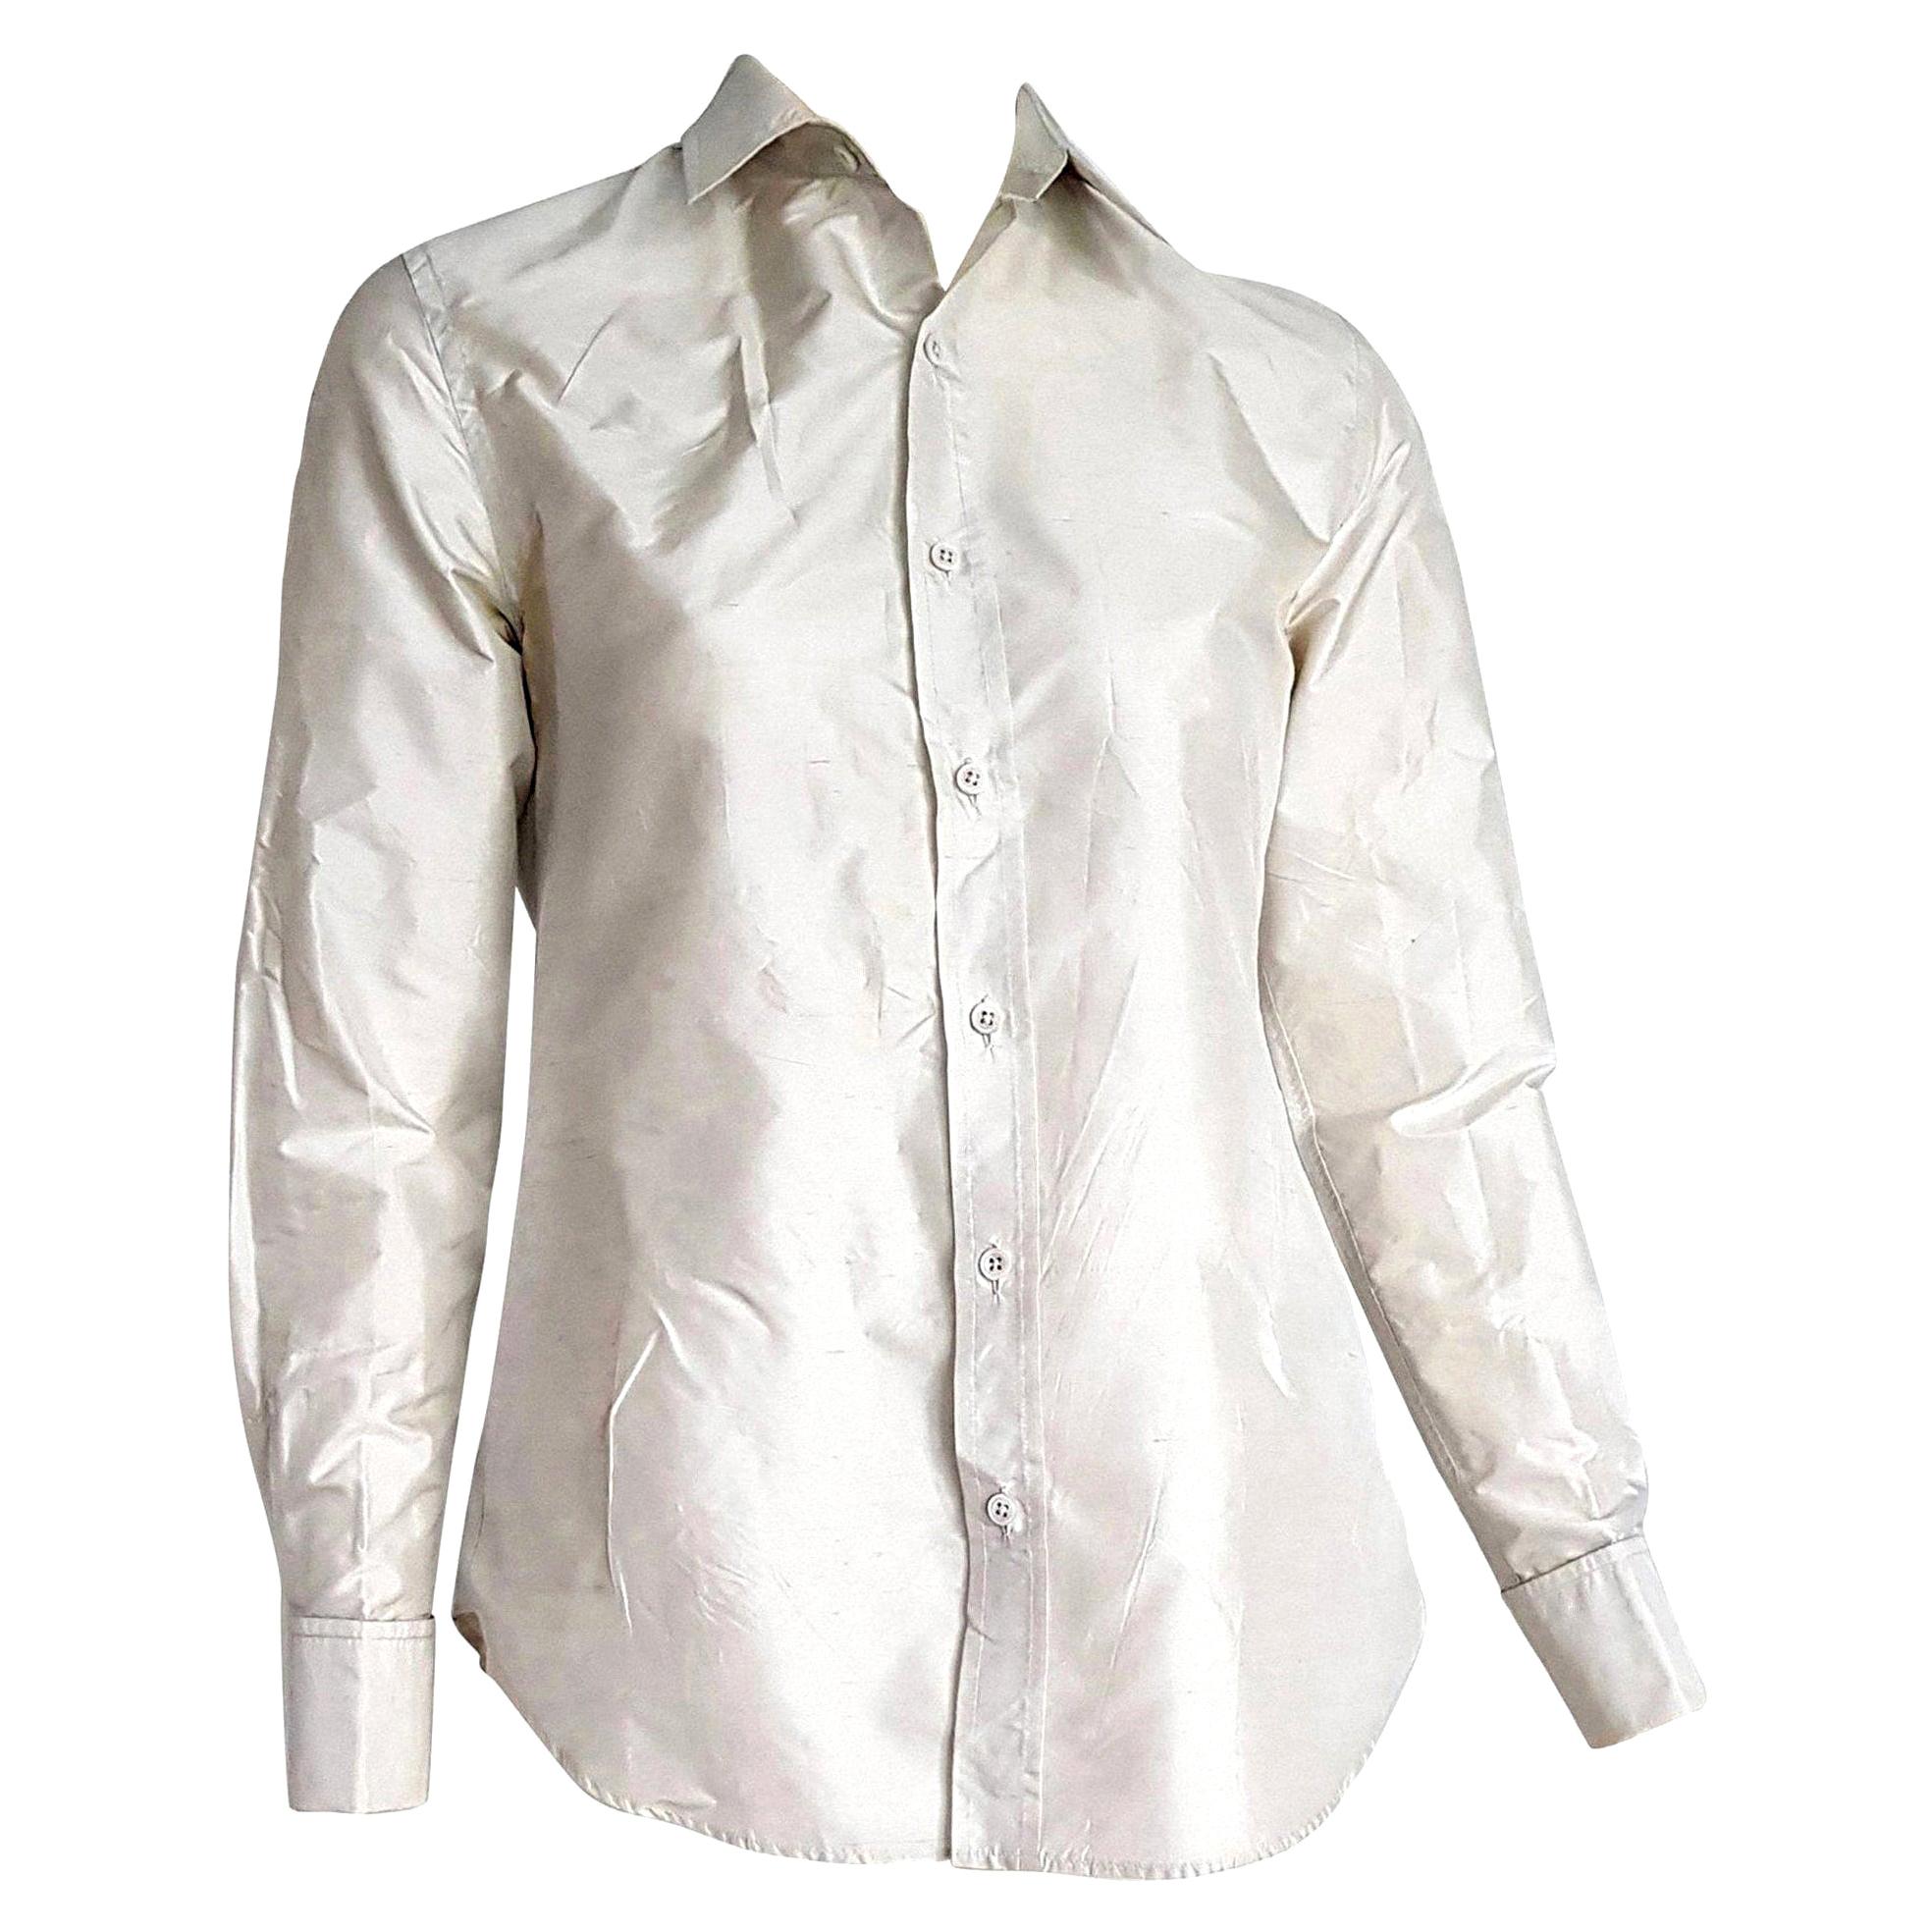 Ralph LAUREN "New" Pearl Gray Silk Shirt - Unworn For Sale